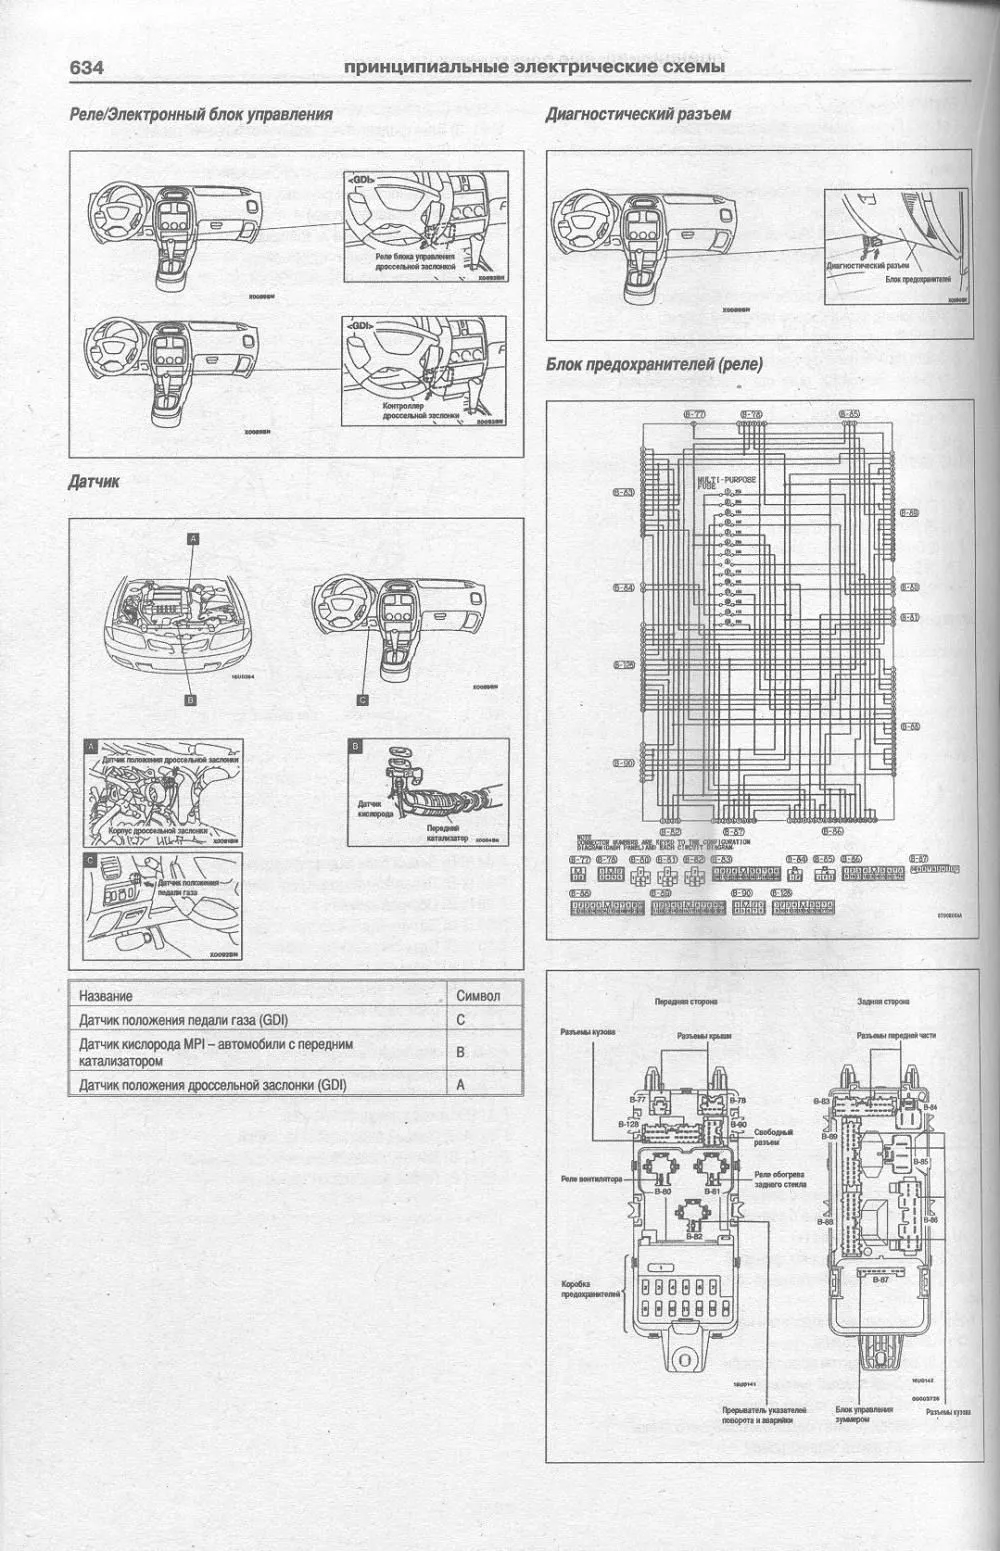 Книга Mitsubishi Carisma 1995-2004 бензин, дизель, электросхемы. Руководство по ремонту и эксплуатации автомобиля. Атласы автомобилей